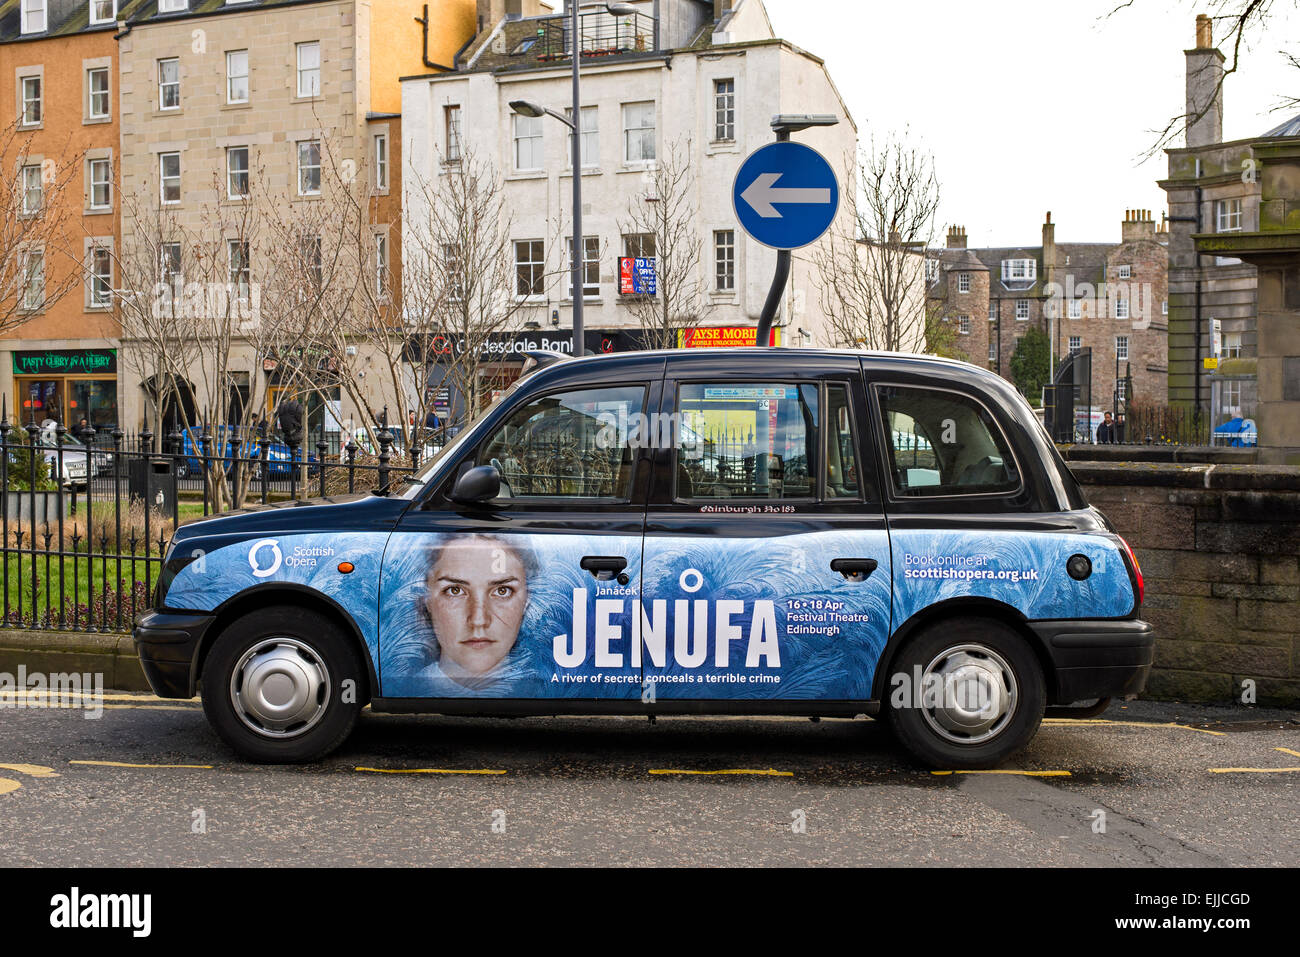 Eine Taxi von Edinburgh mit einer Werbeanzeige für Jenůfa, eine Oper von Leoš Janáček, parkte in Nicolson Square, Edinburgh, Schottland, Vereinigtes Königreich. Stockfoto